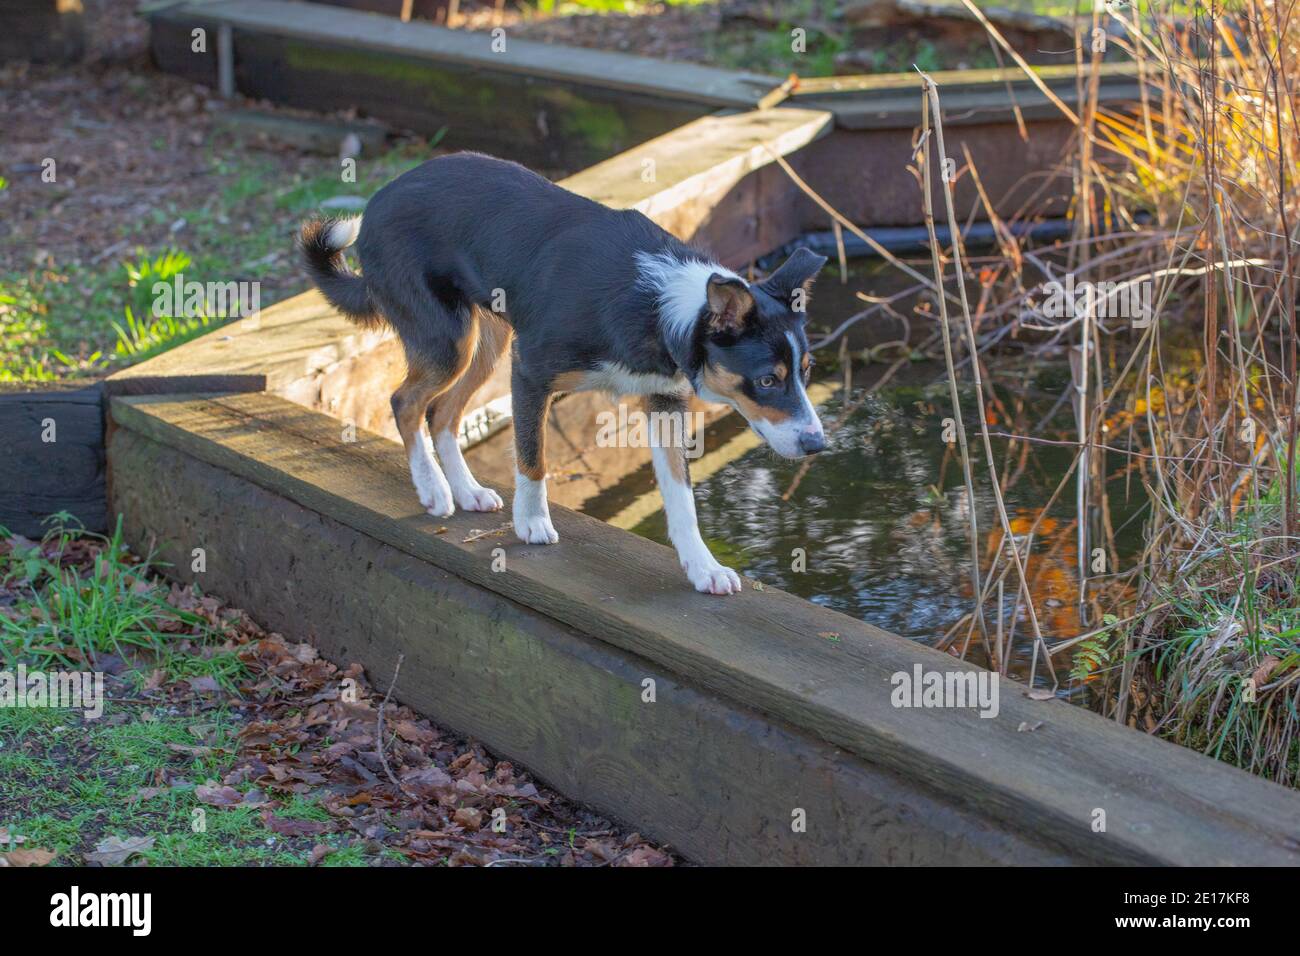 Dreifarbiger Border Collie Dog (Canis lupus familiaris). Haustier, Begleiter, Arbeit, Schäferhund Rasse. Gehen Sie auf einer Planke um einen Gartenteich. Stockfoto